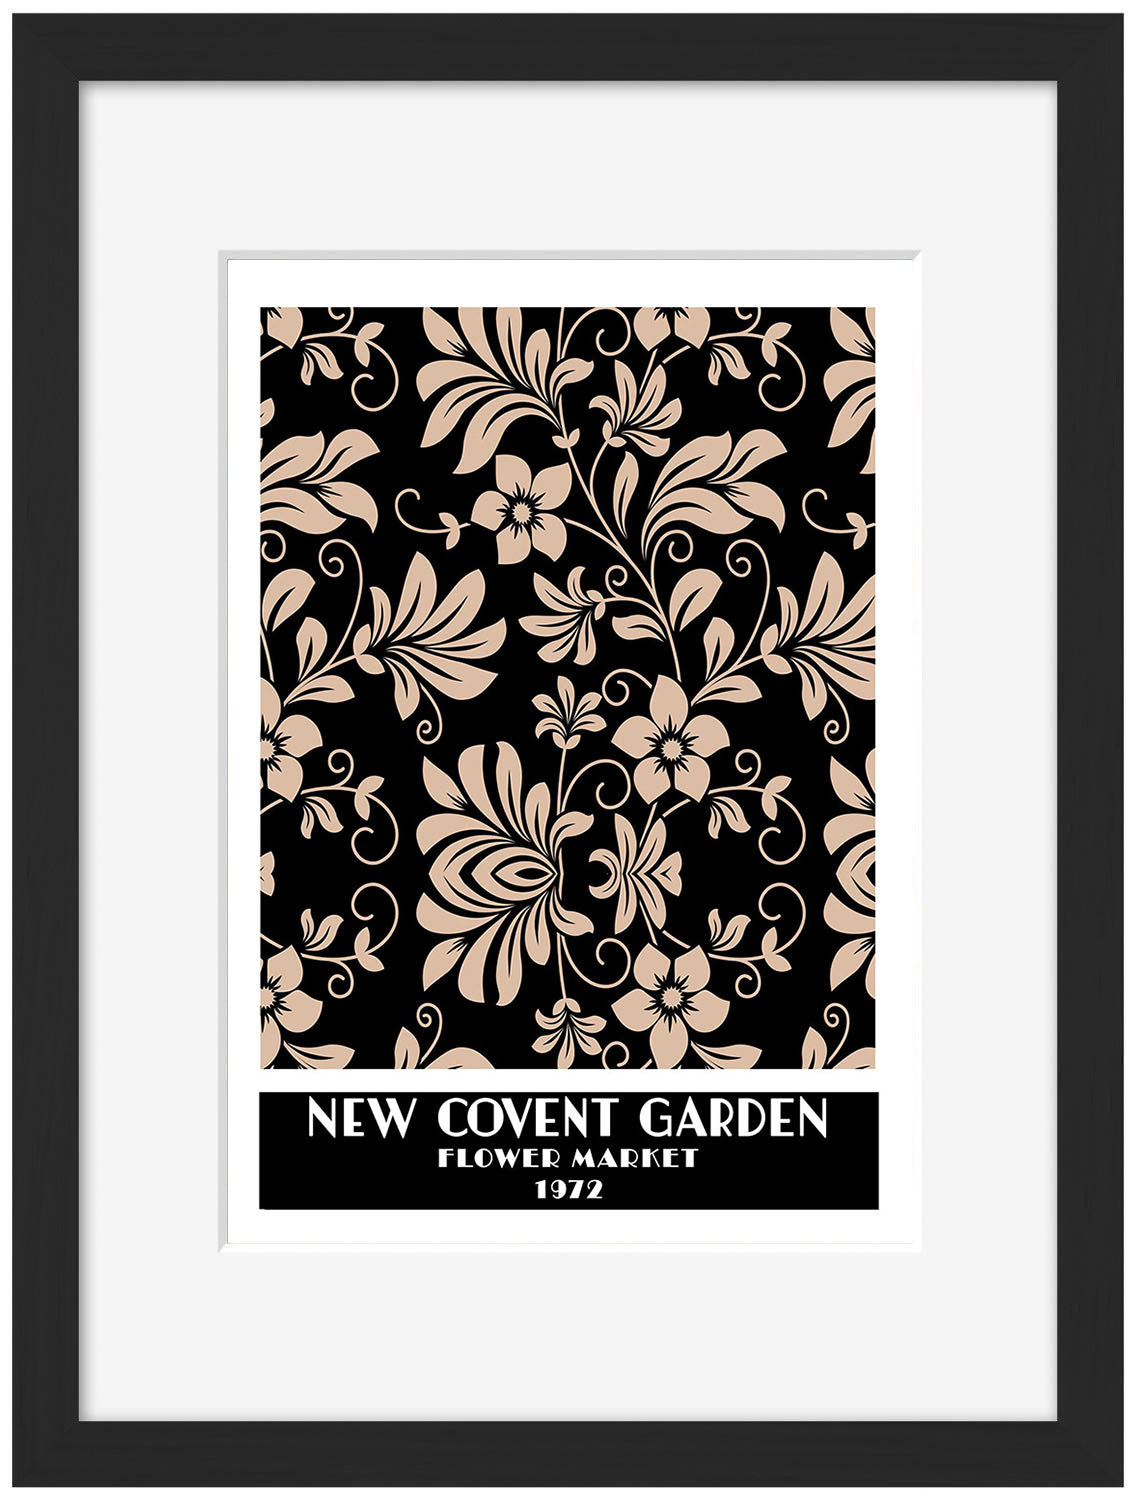 New Covent Garden Black-expositions, print-Framed Print-30 x 40 cm-BLUE SHAKER